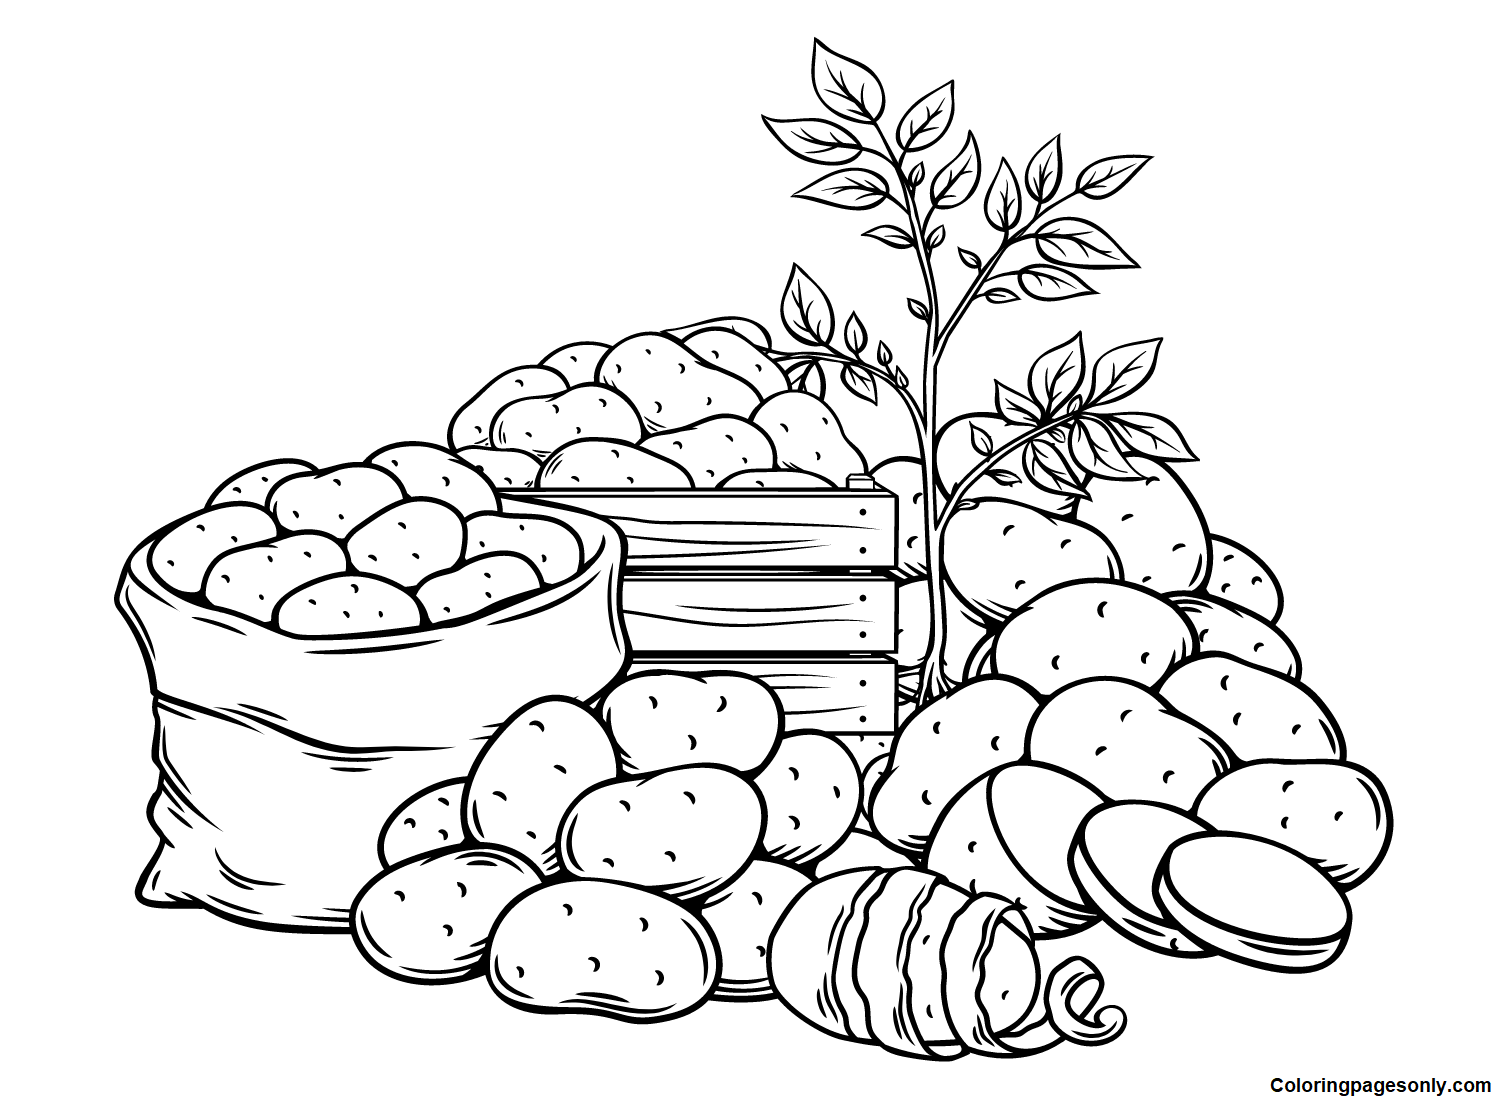 Récolte de pommes de terre fraîches à partir de pommes de terre